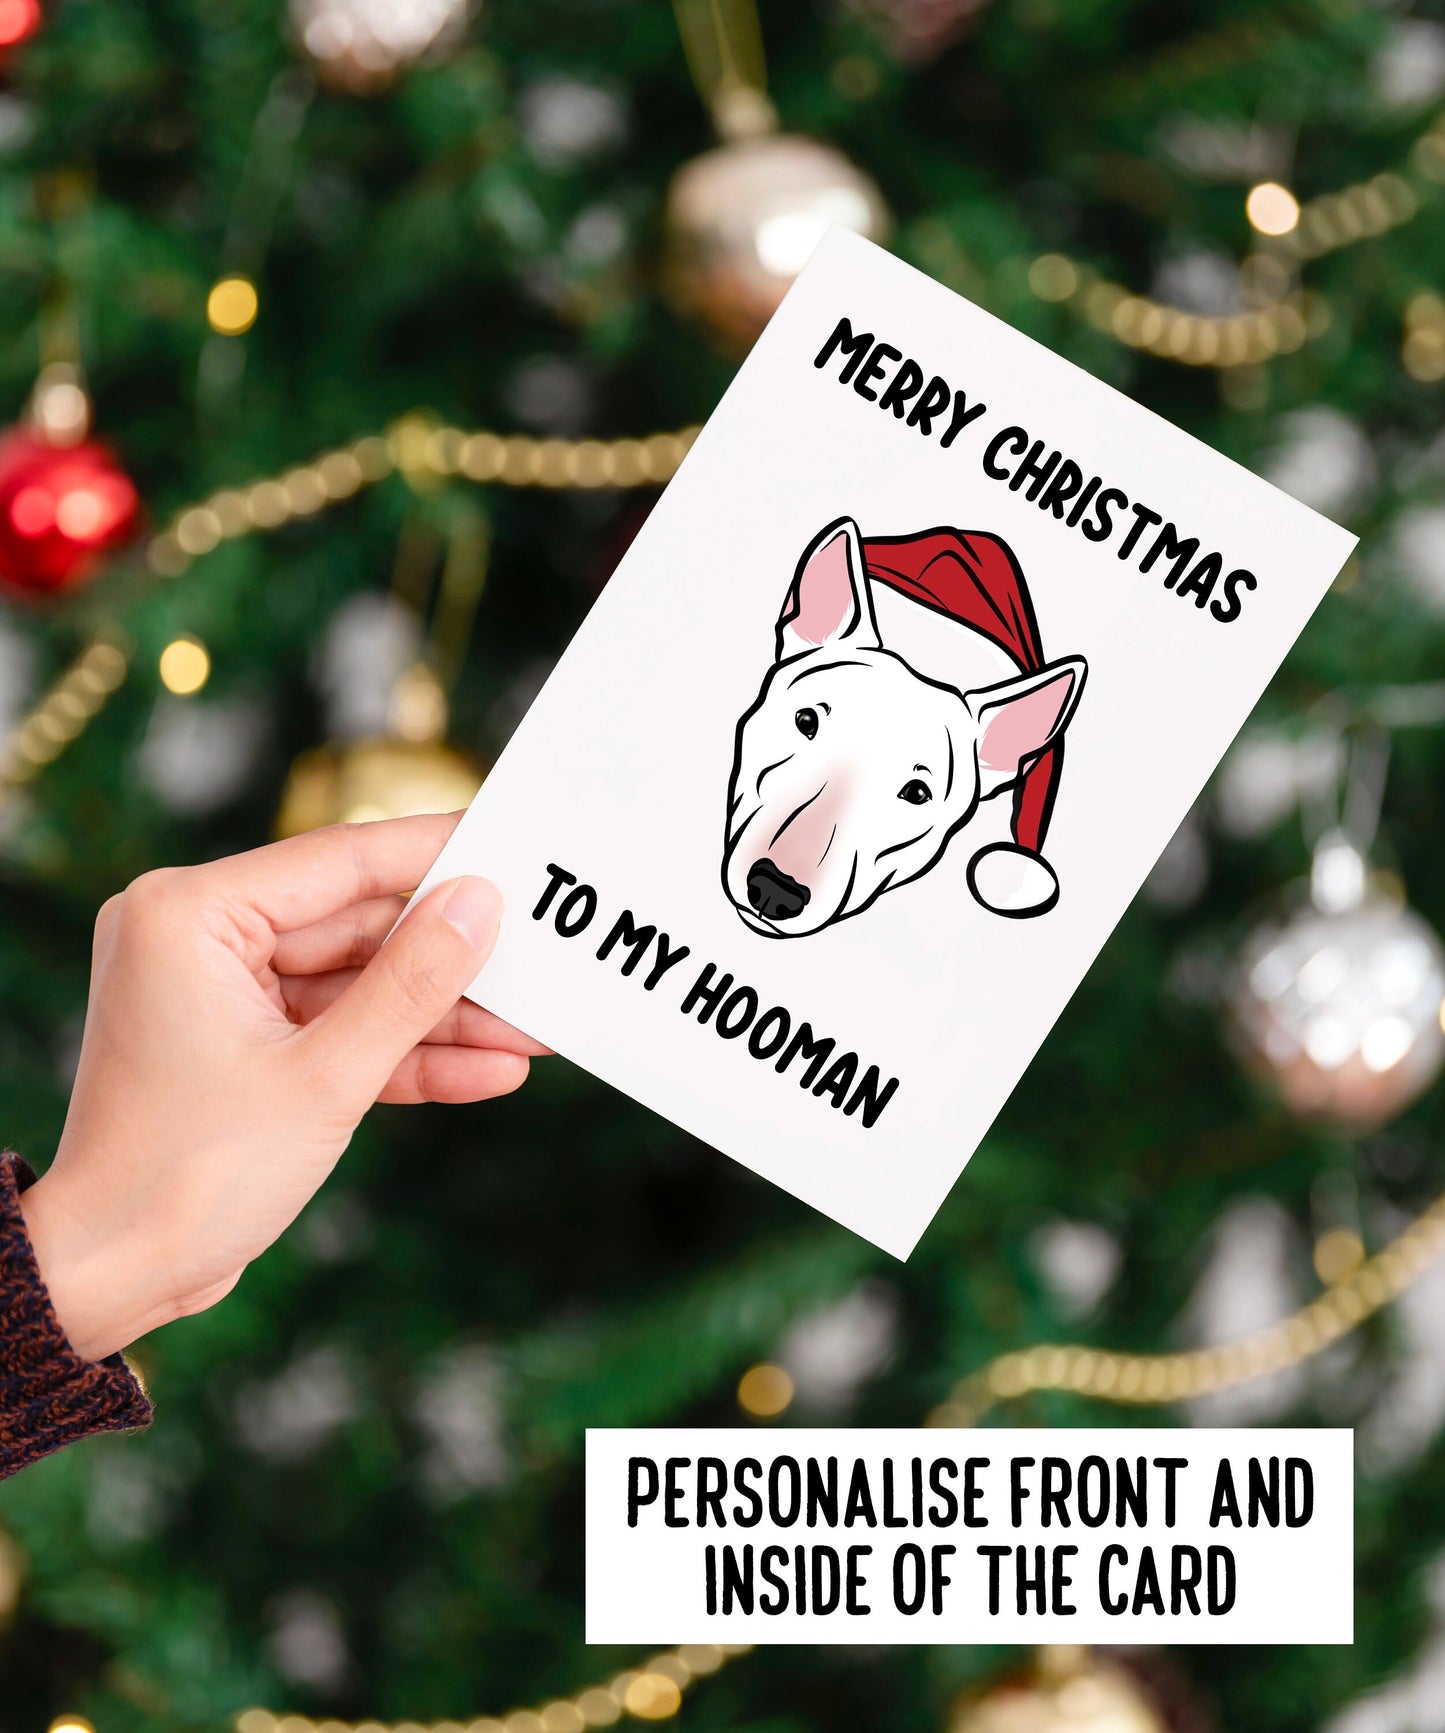 Bull Terrier Merry Christmas Card/ Custom Bully Breed Greeting Card/ Dog Portrait Festive Card/ Bull Terrier Owner Personal Greeting Card